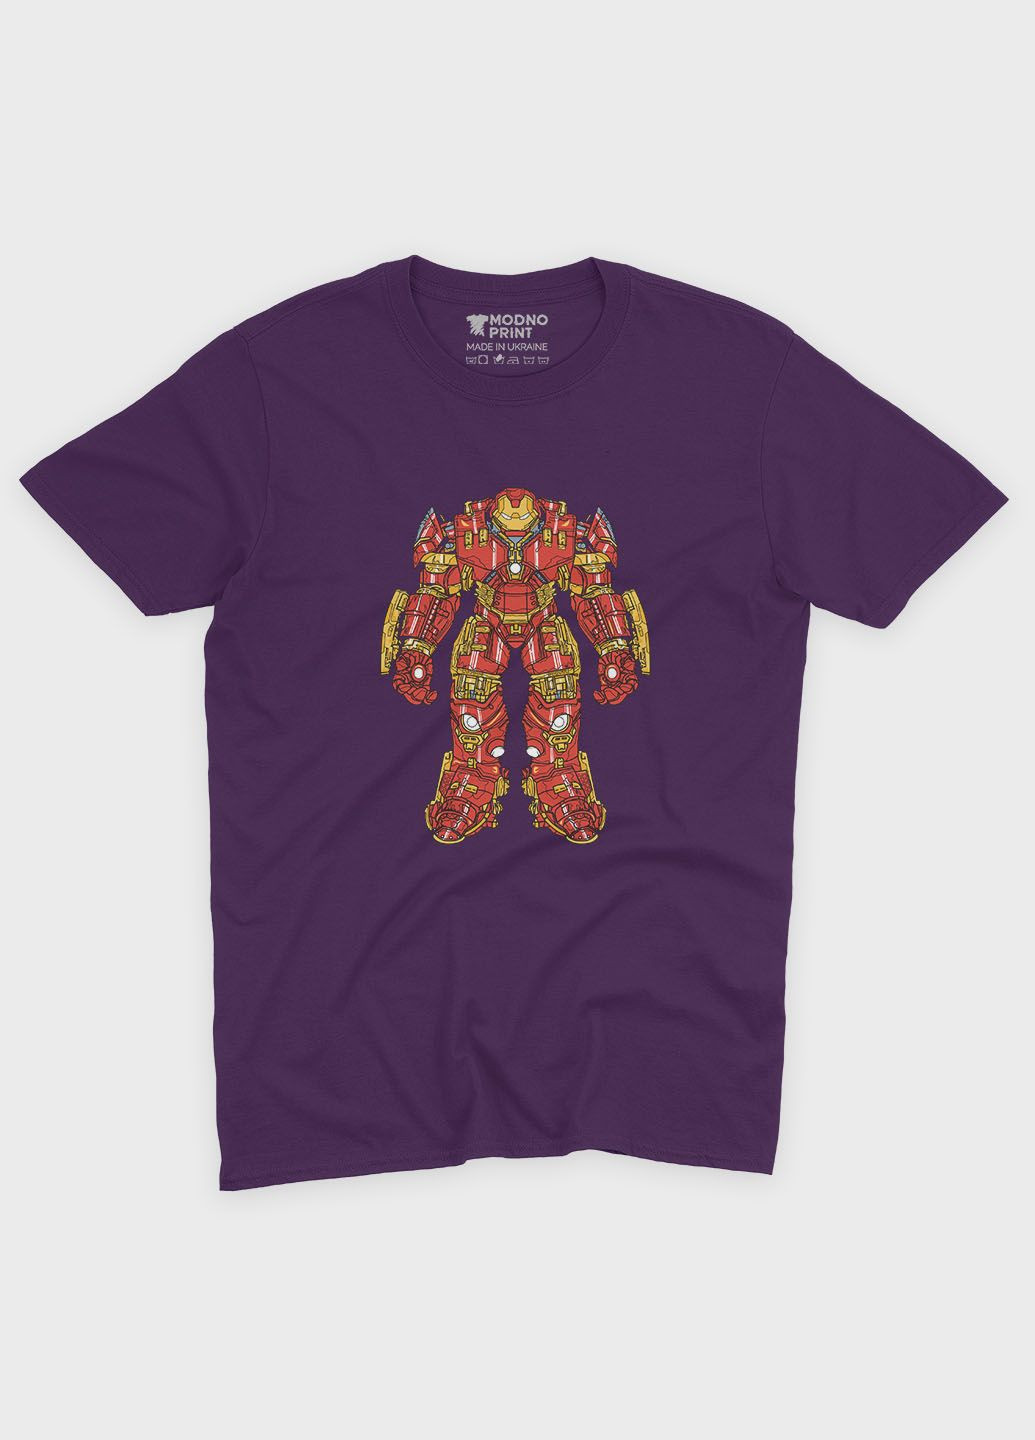 Фіолетова демісезонна футболка для хлопчика з принтом супергероя - залізна людина (ts001-1-dby-006-016-012-b) Modno